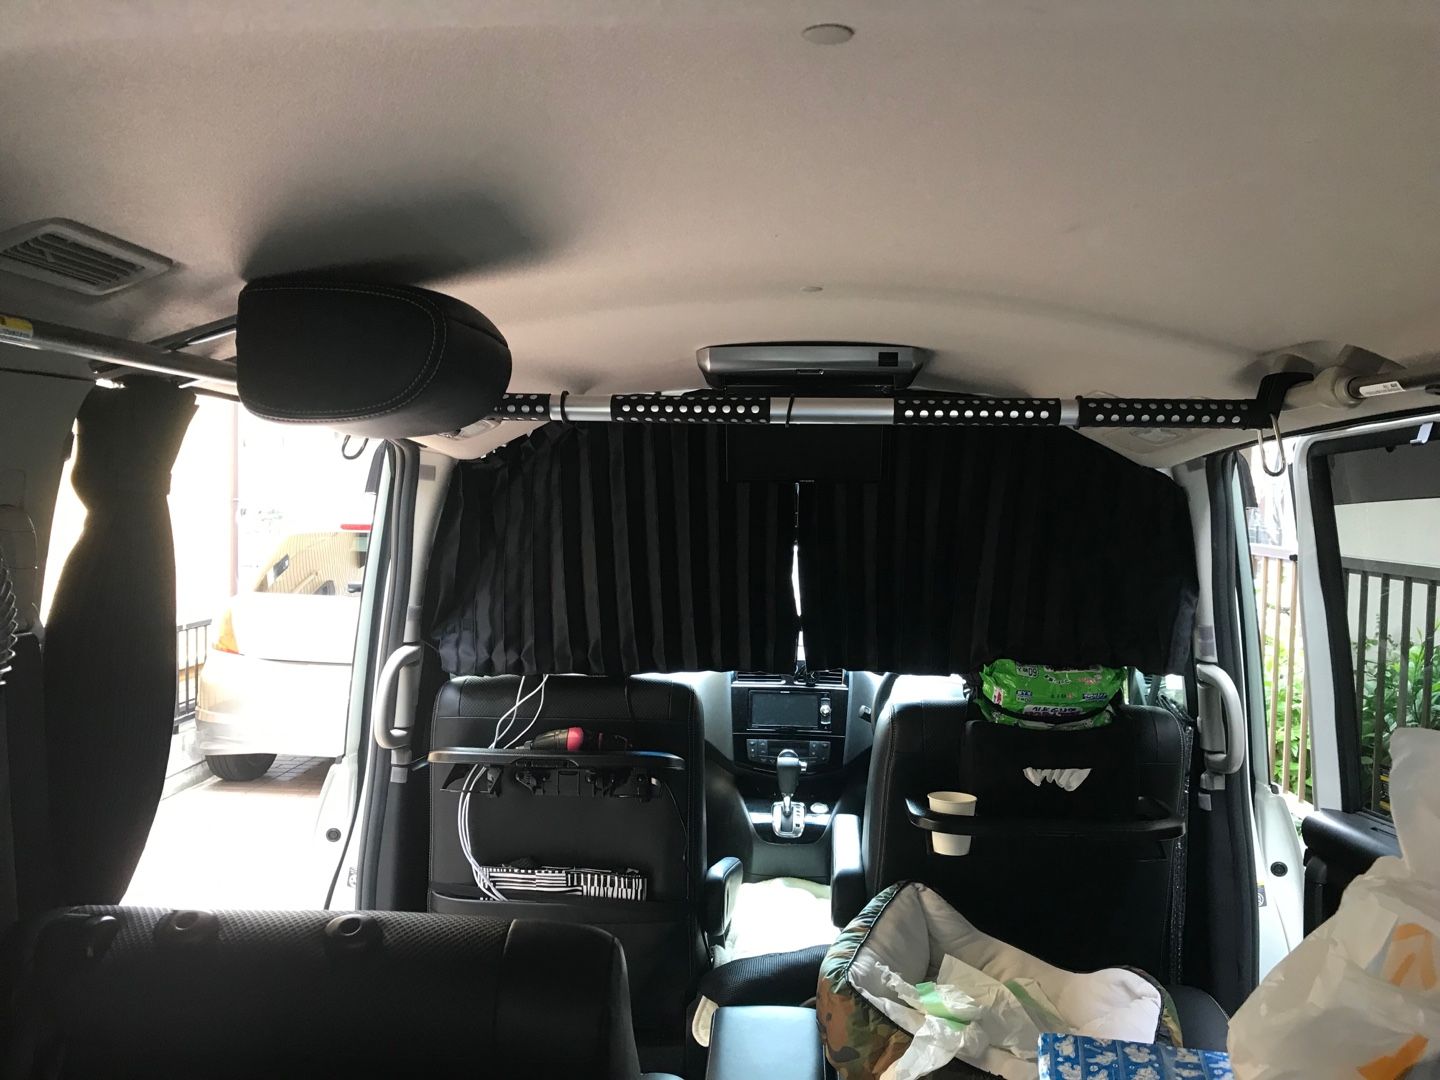 間仕切りカーテンを交換 セレナc26で車中泊仕様を目指すブログ 楽天ブログ